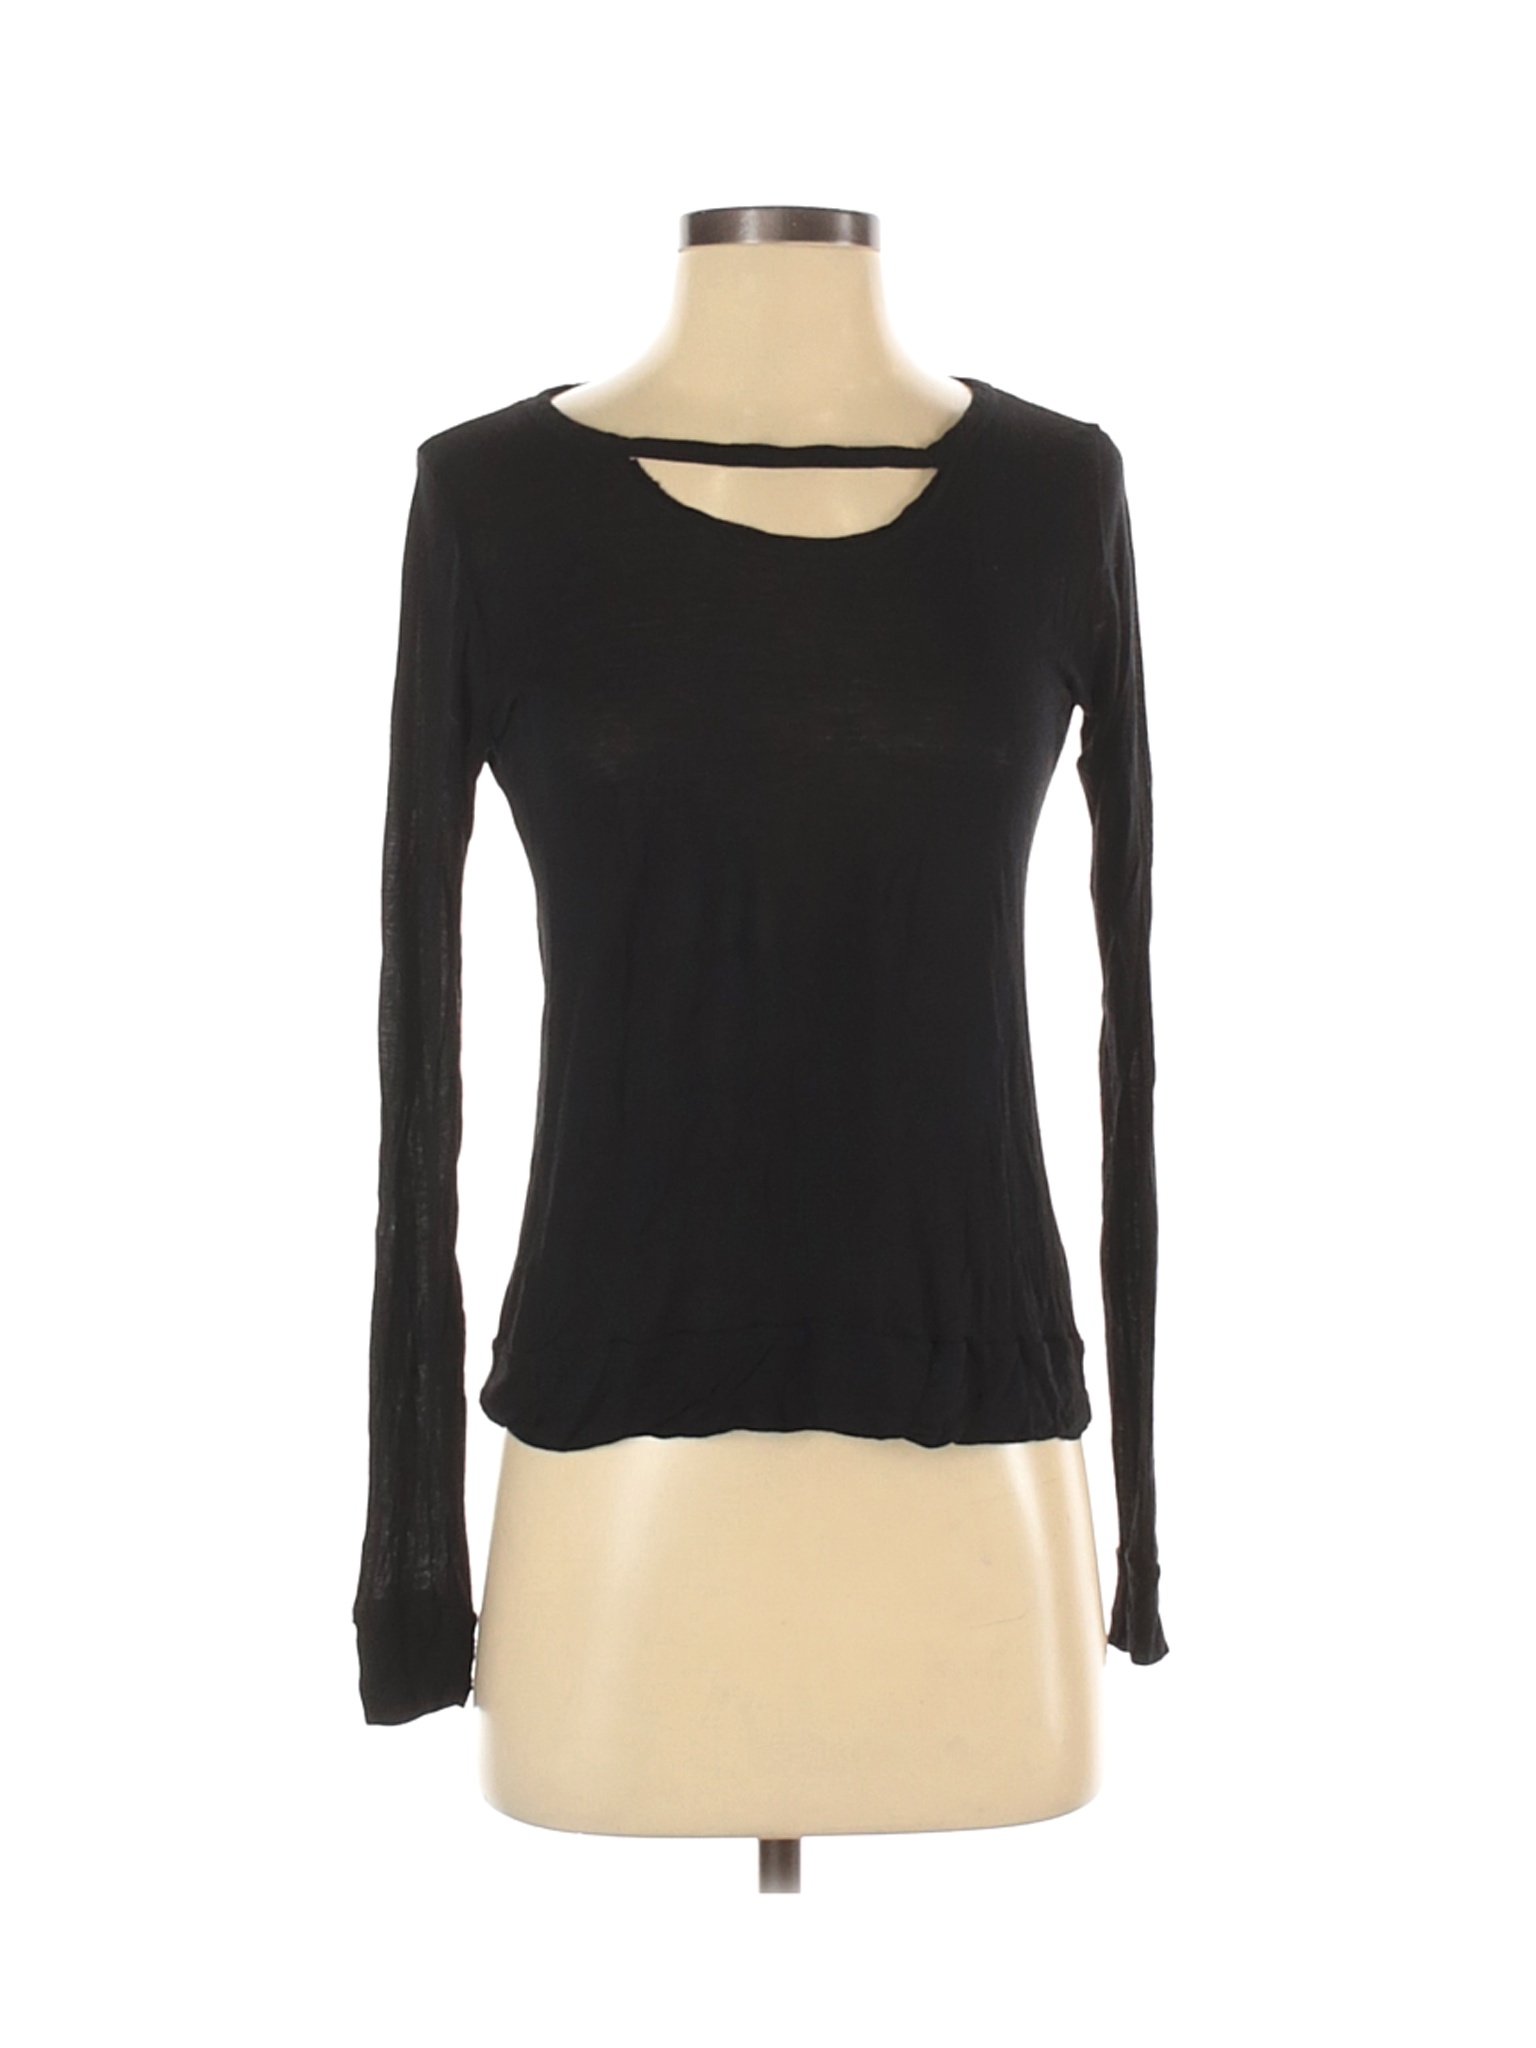 Michael Lauren Women Black Long Sleeve Top S | eBay